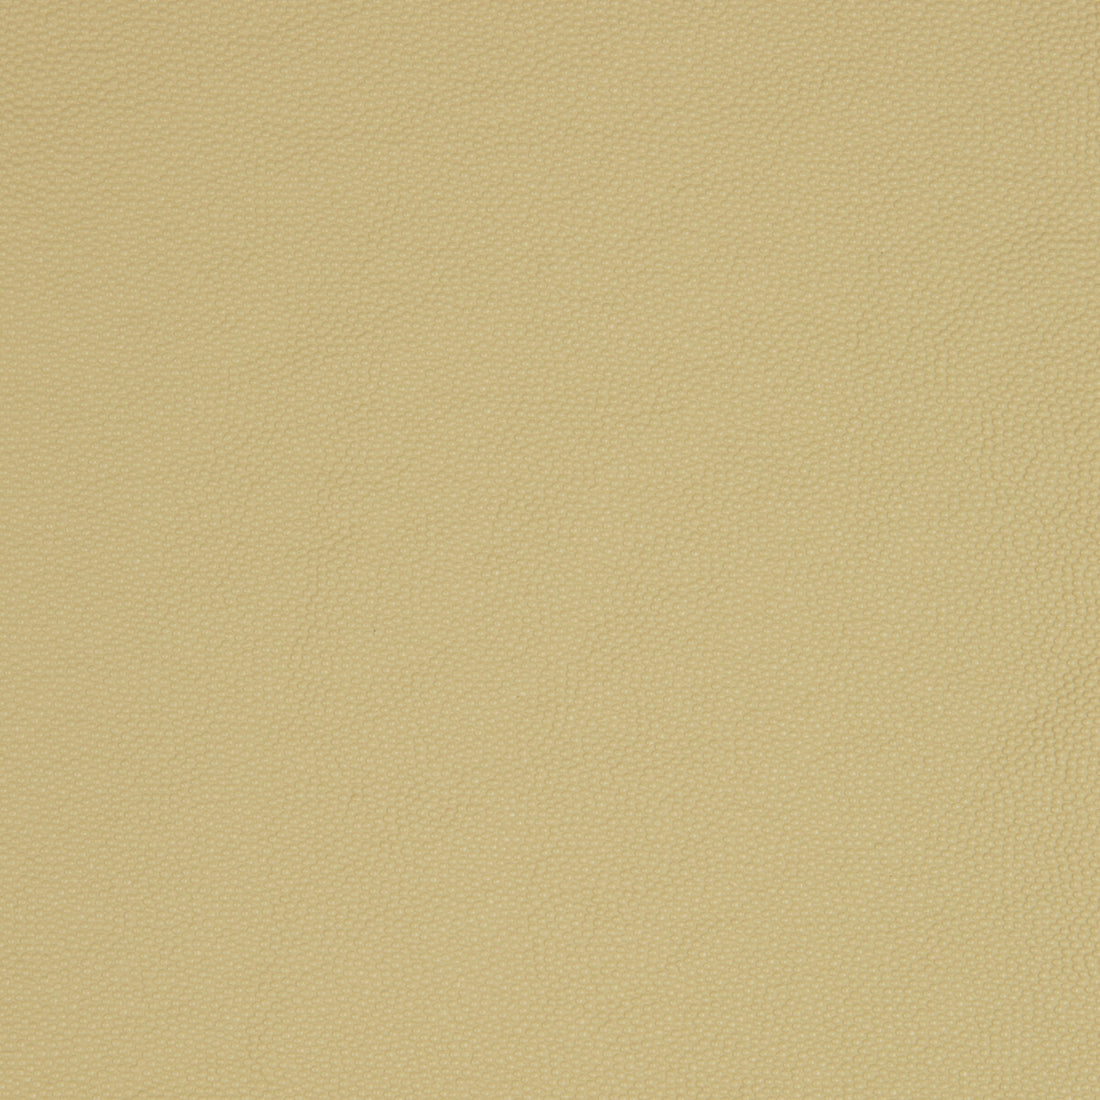 Kravet Smart fabric in aldwin-16 color - pattern ALDWIN.16.0 - by Kravet Smart